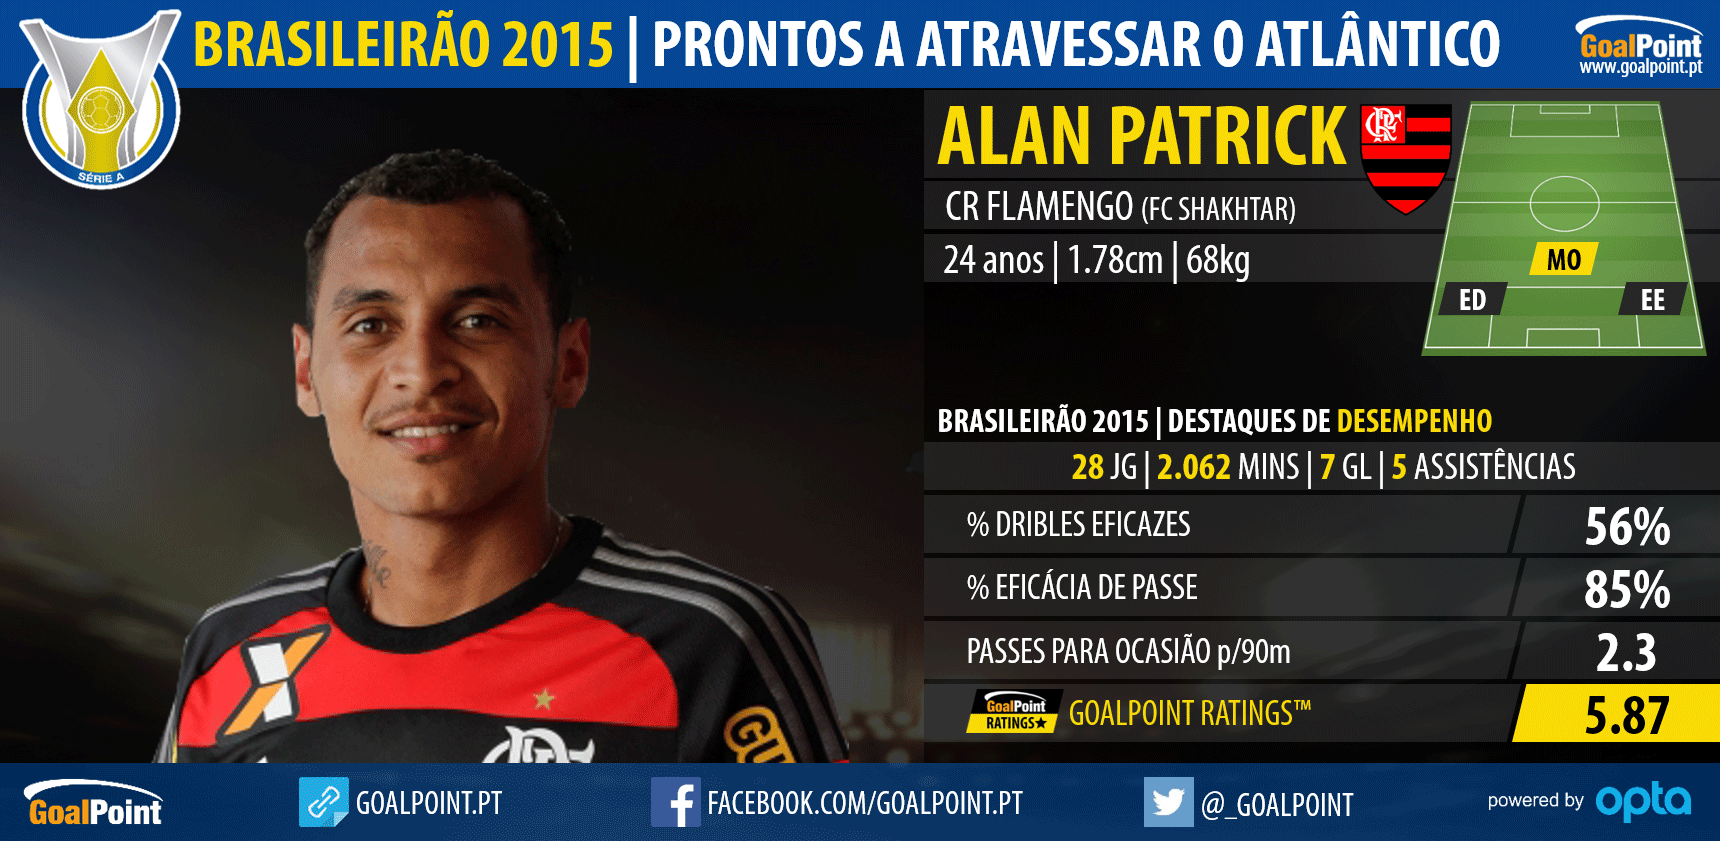 Brasileirão 2015: 10 nomes prontos a atravessar o Atlântico - Alan Patrick